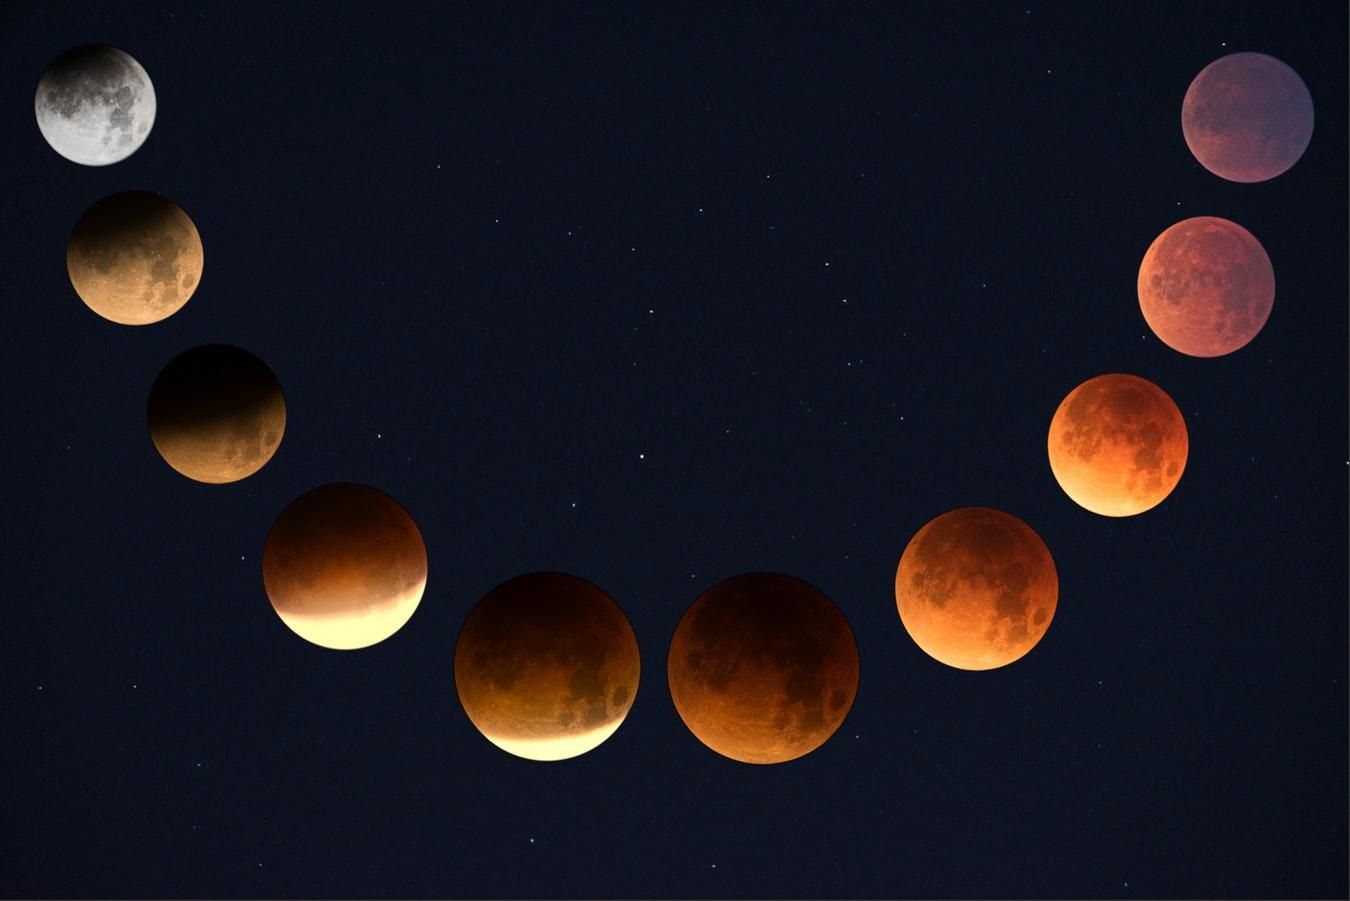 Місячне затемнення 27 липня 2018 - вплив затемнення на людей